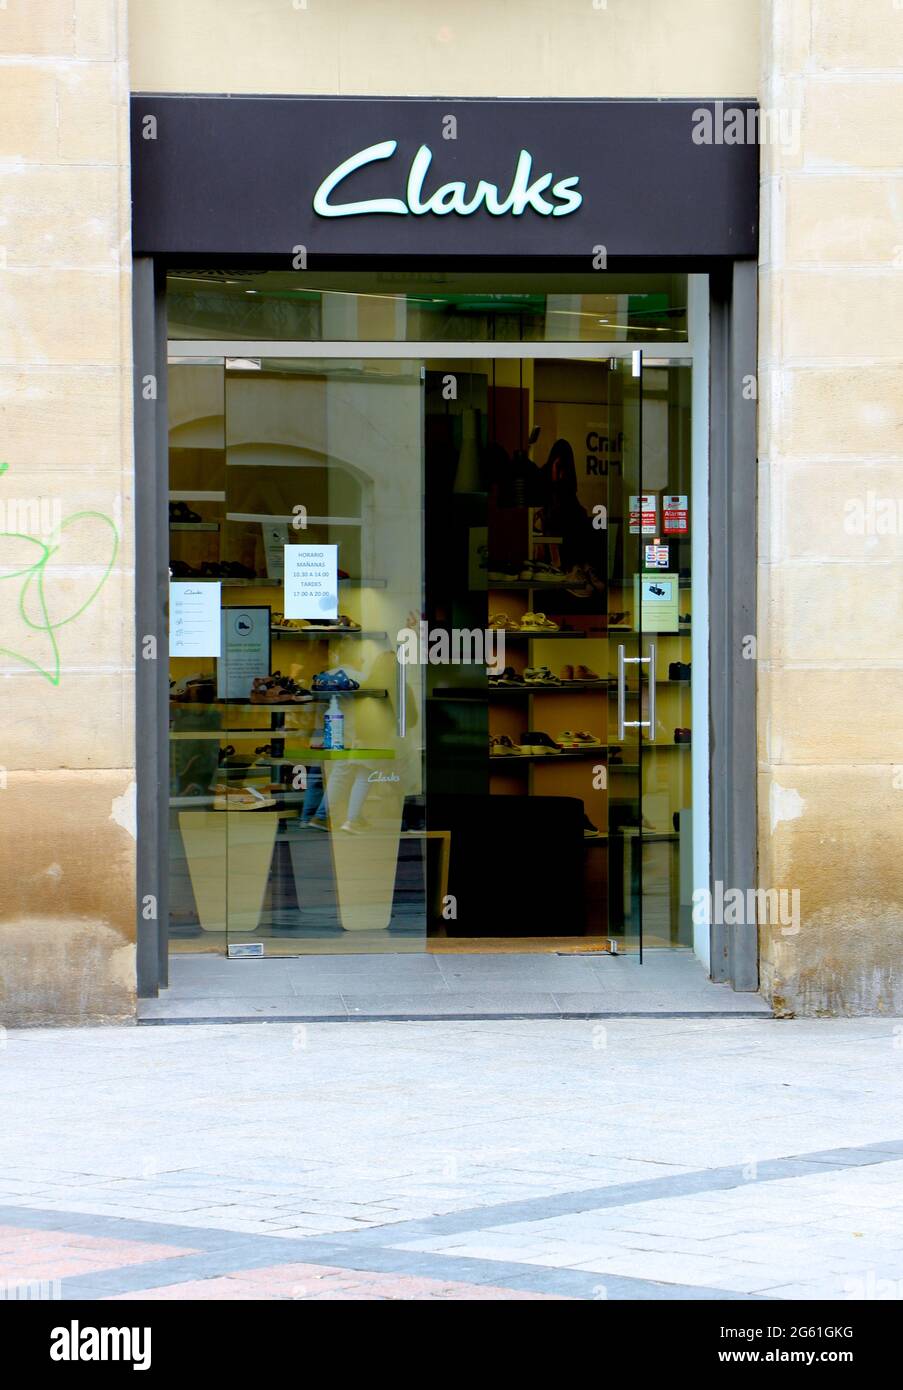 C. & J. Clark International Ltd conocida como el cartel de la tienda de calzado Clarks y la entrada a la tienda Zaragoza Aragon España Fotografía de stock -